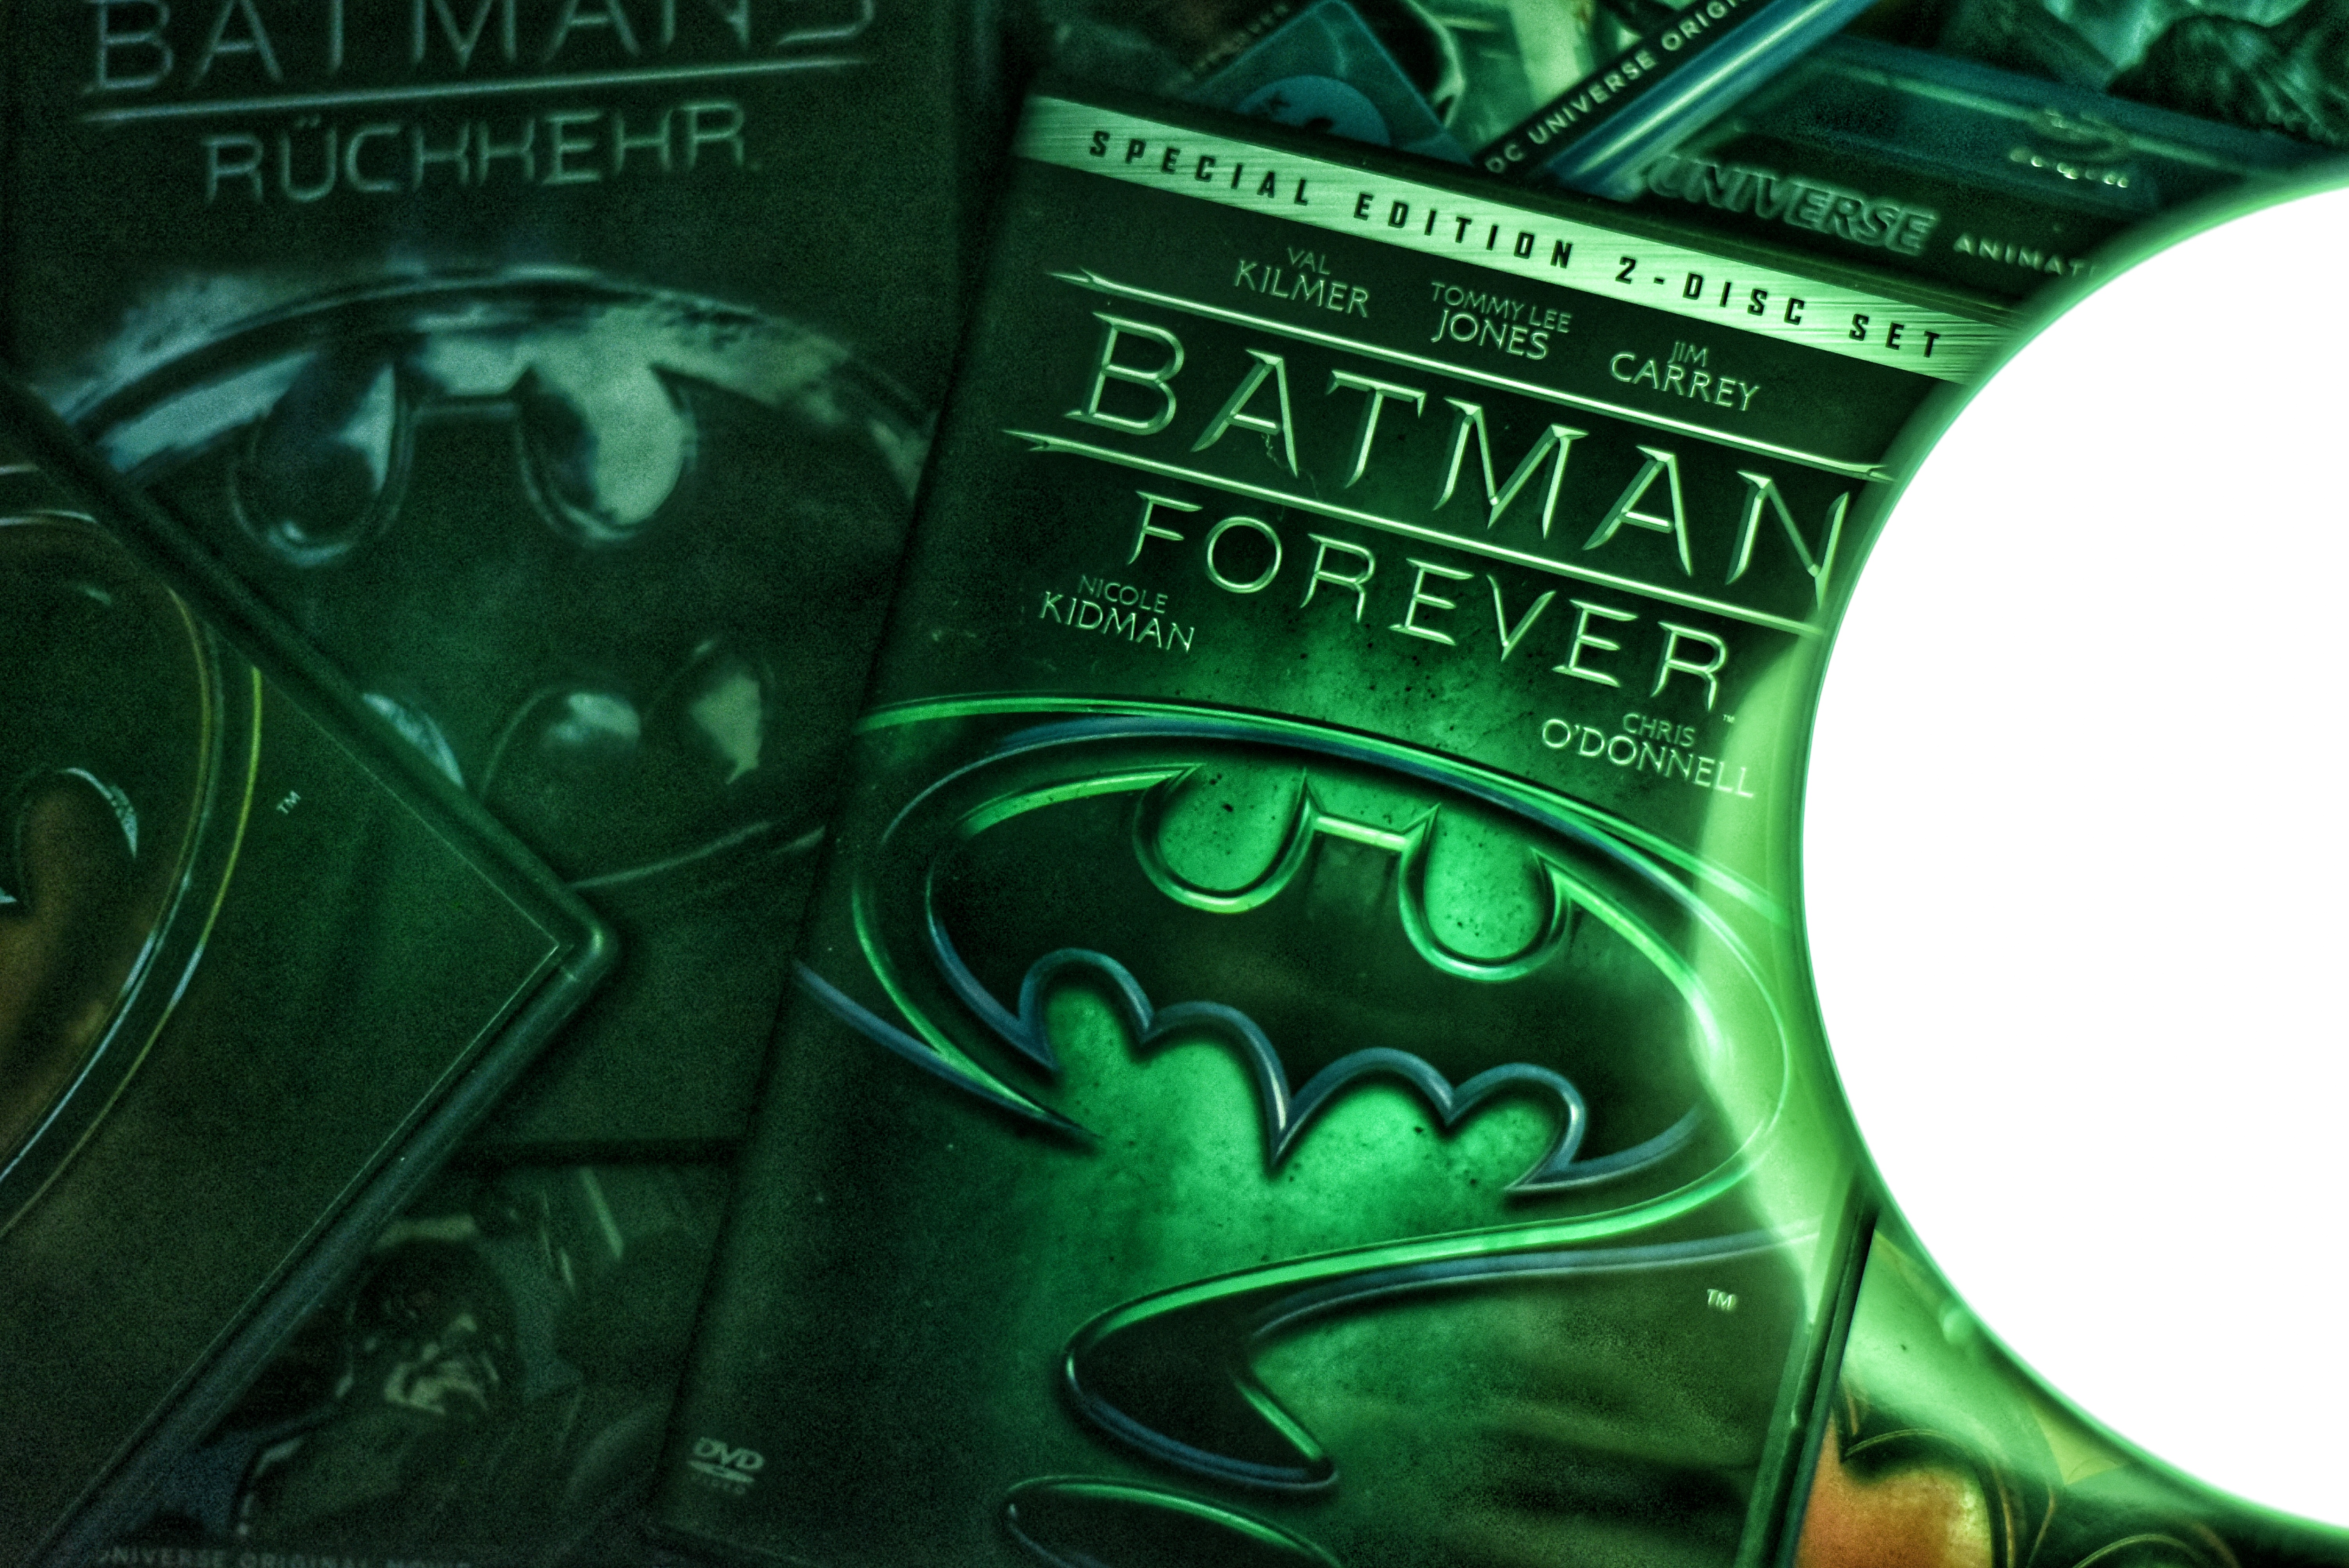 Batman Forever DVD